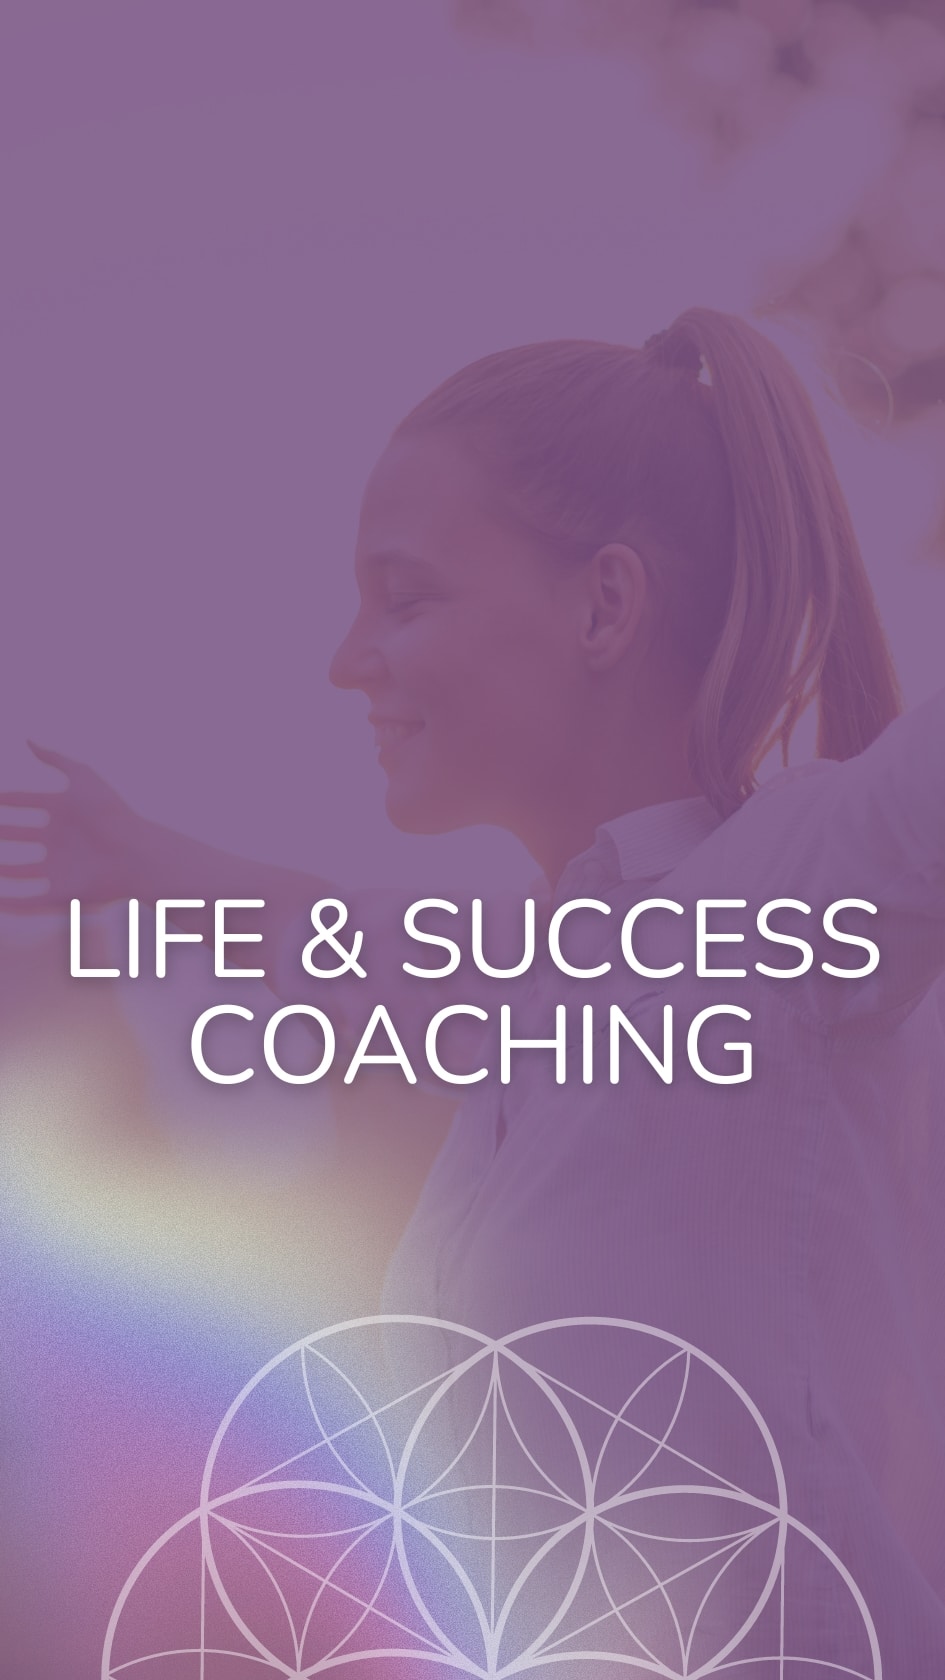 Life Success Coaching